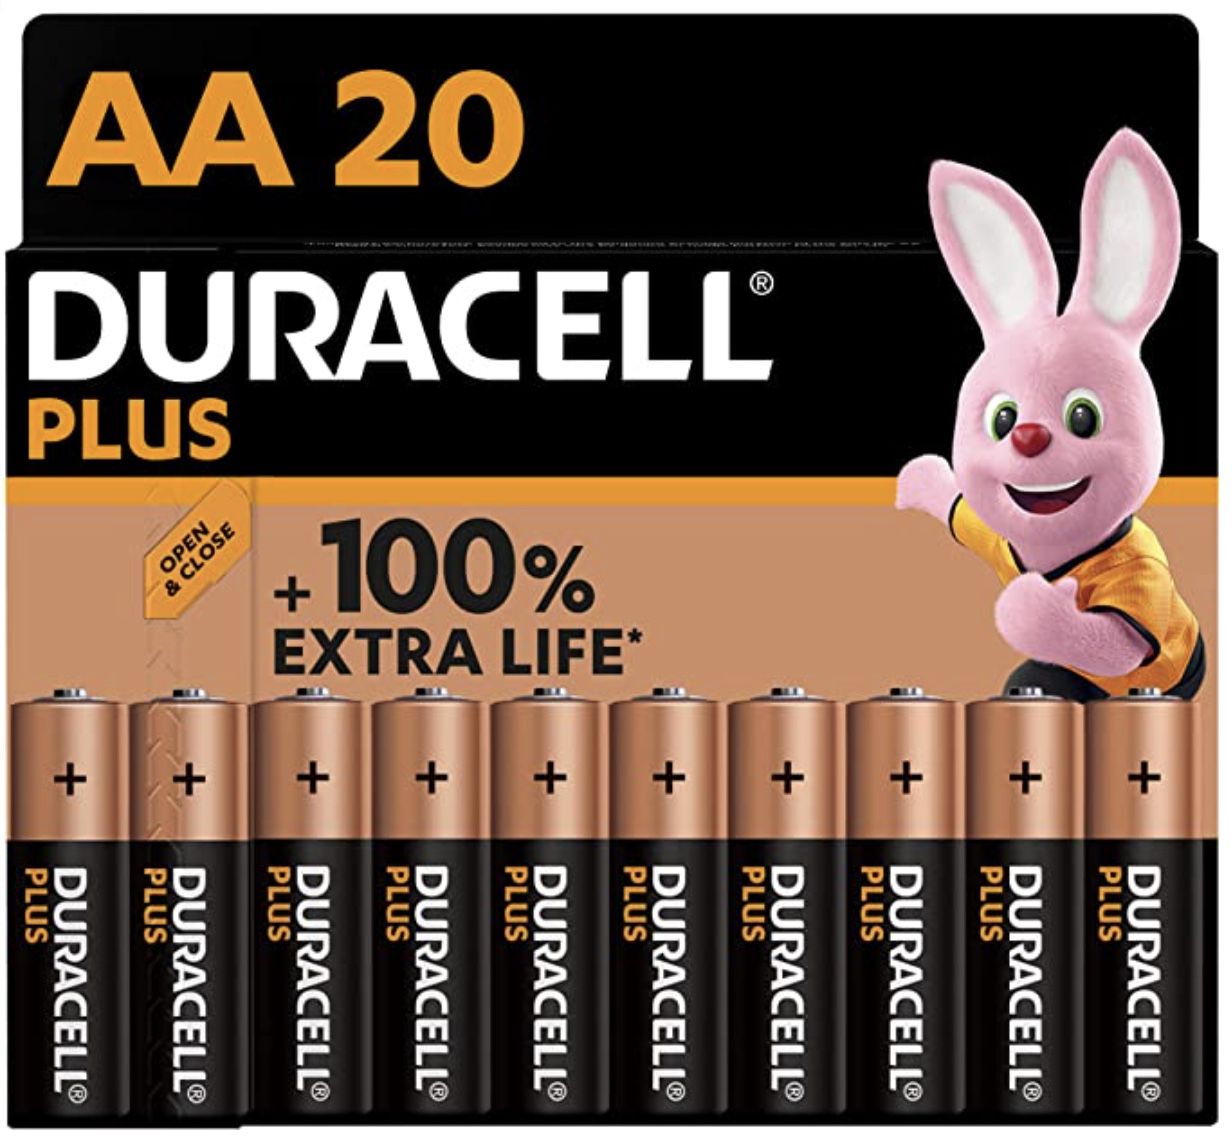 20er Pack Duracell Plus Alkaline Mignon AA LR6 Batterien mit 1,5 V Spannung für 7,51€ (statt 13€)   Prime